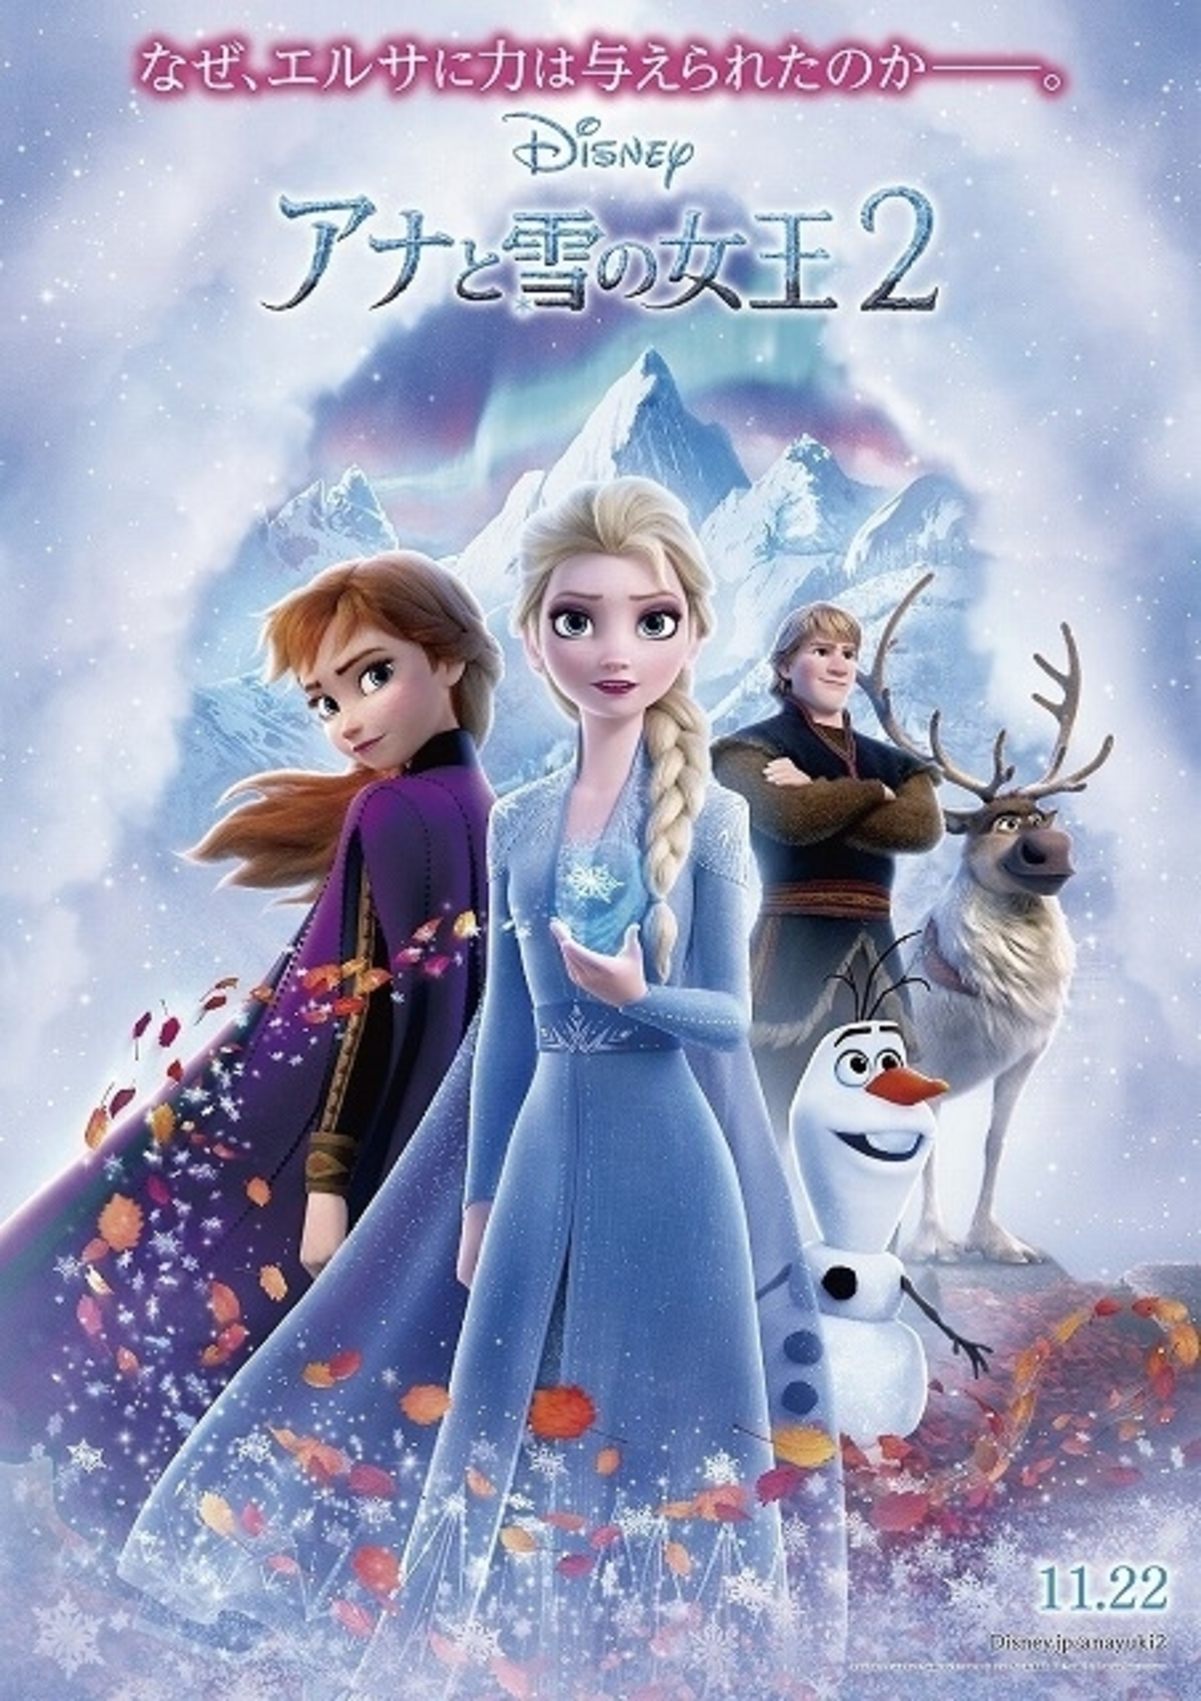 アナと雪の女王2 雪の結晶 落ち葉が舞う神秘的な新ビジュアル公開 映画ニュース 映画 Com